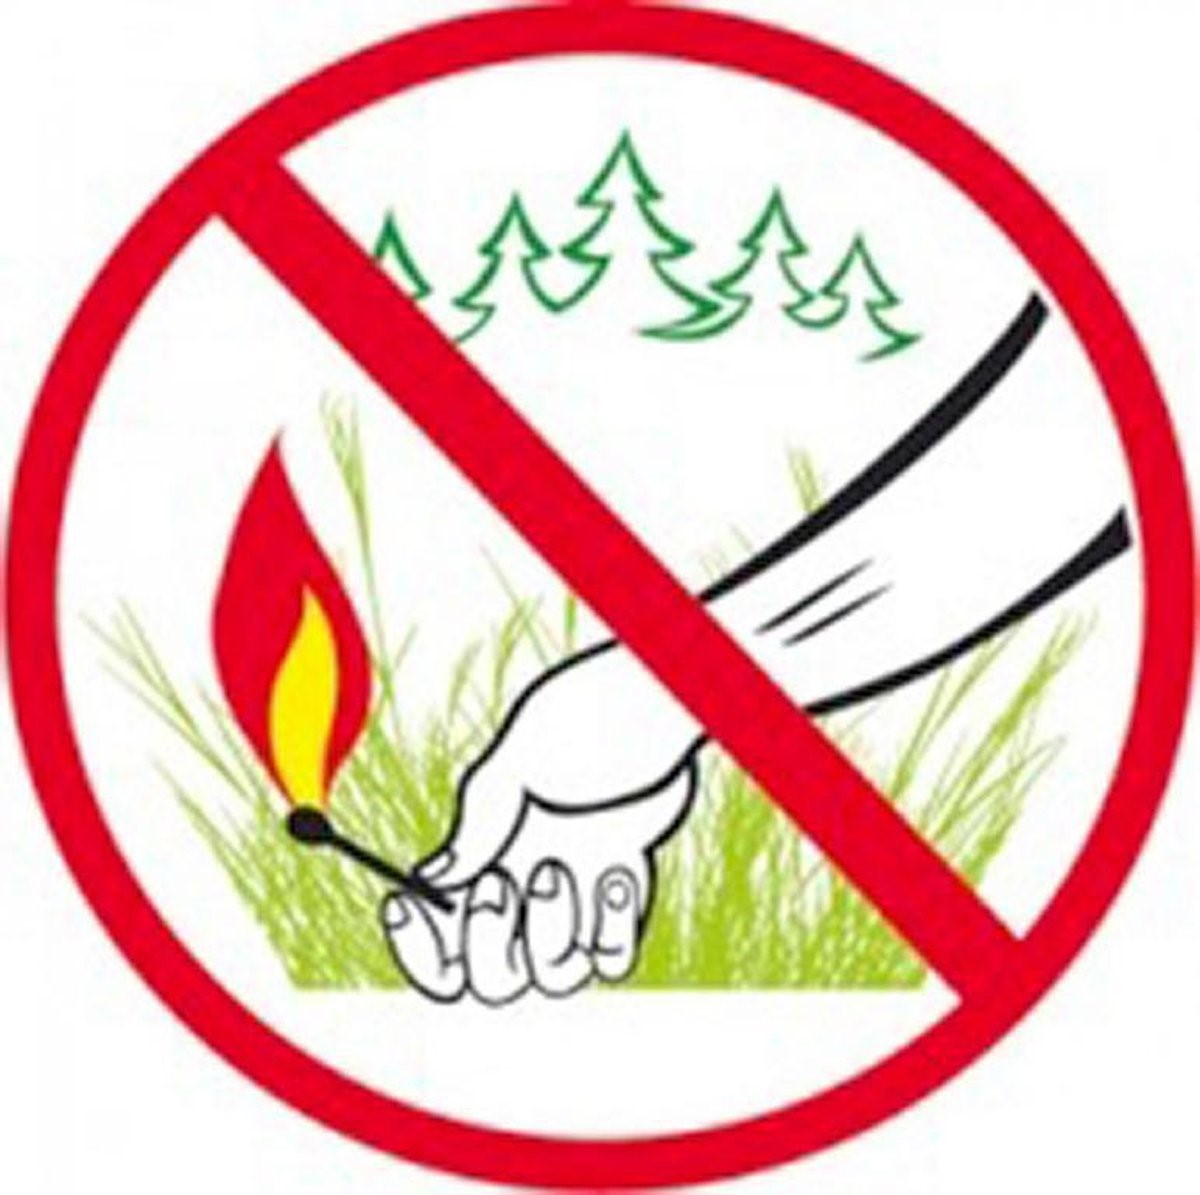 Не поджигайте сухую траву!.